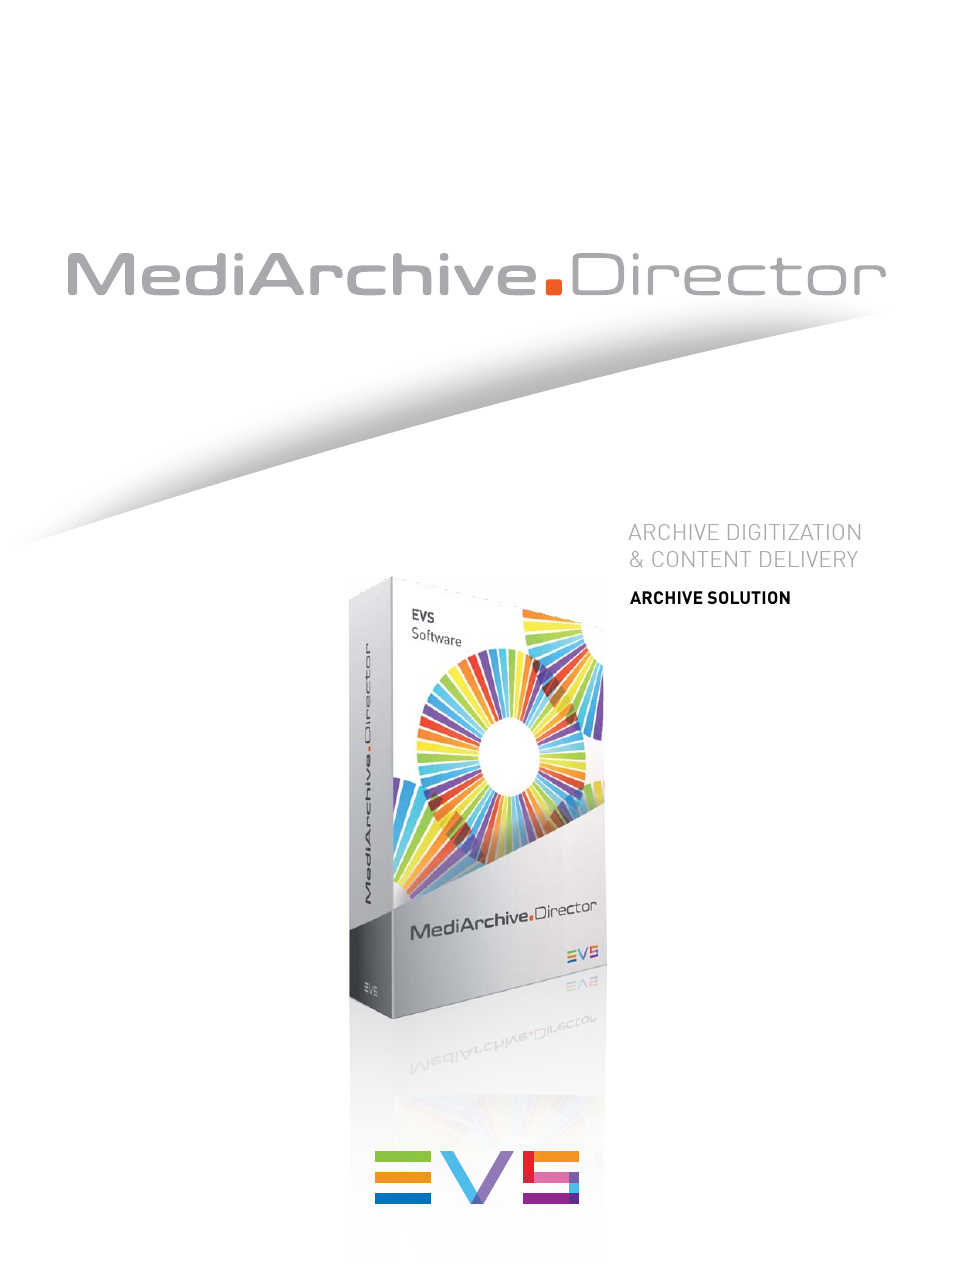 MediArchive Director